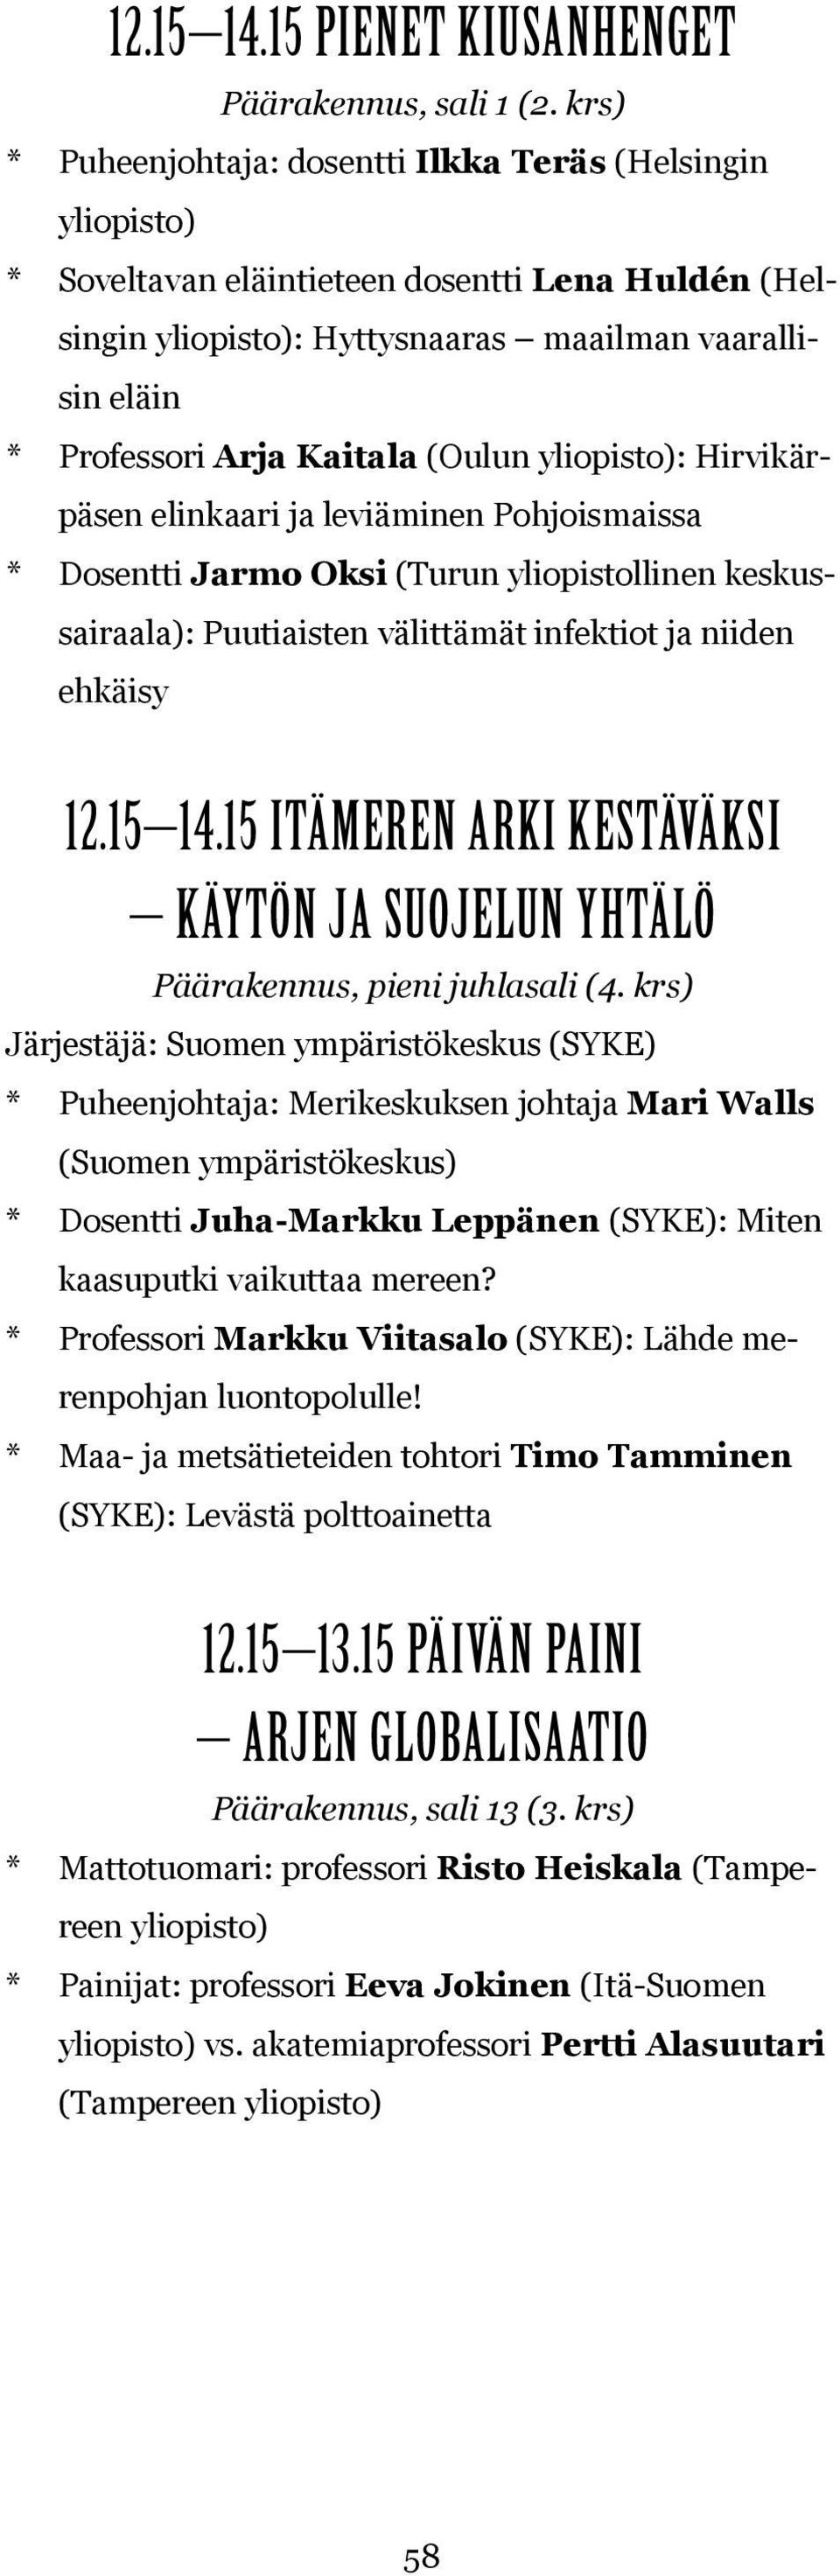 Hirvikärpäsen elinkaari ja leviäminen Pohjoismaissa * Dosentti Jarmo Oksi (Turun yliopistollinen keskussairaala): Puutiaisten välittämät infektiot ja niiden ehkäisy 12.15 14.